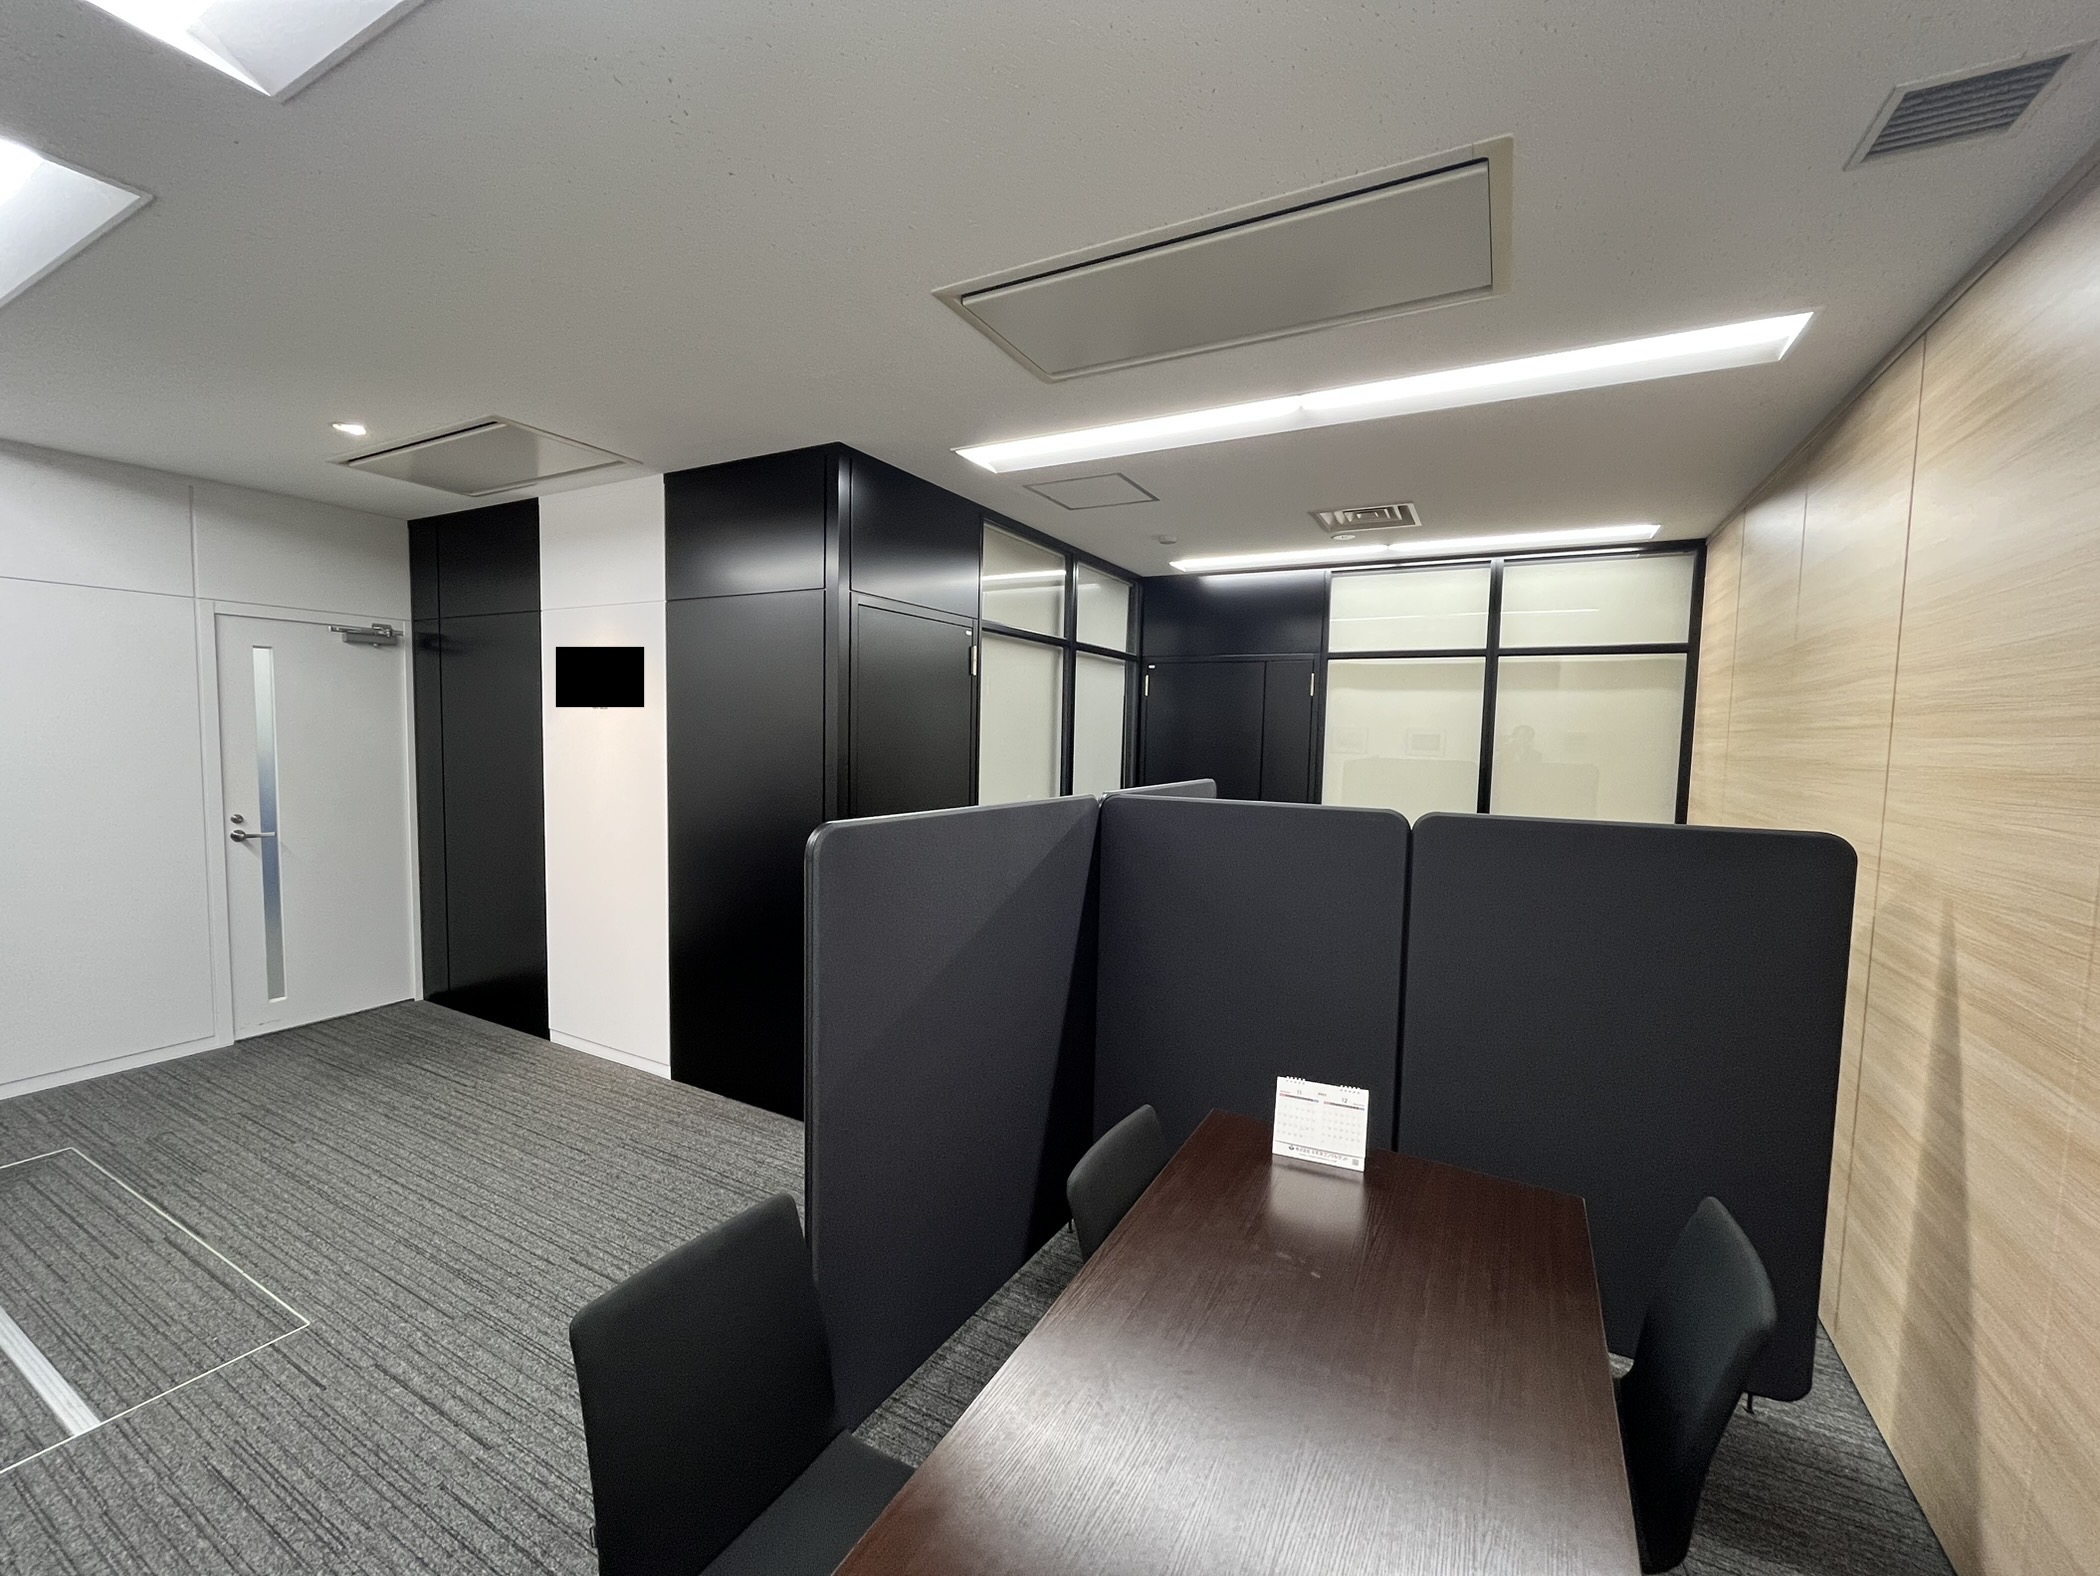 【居抜き】福岡市中央区に会議室つきの居抜きオフィスが登場